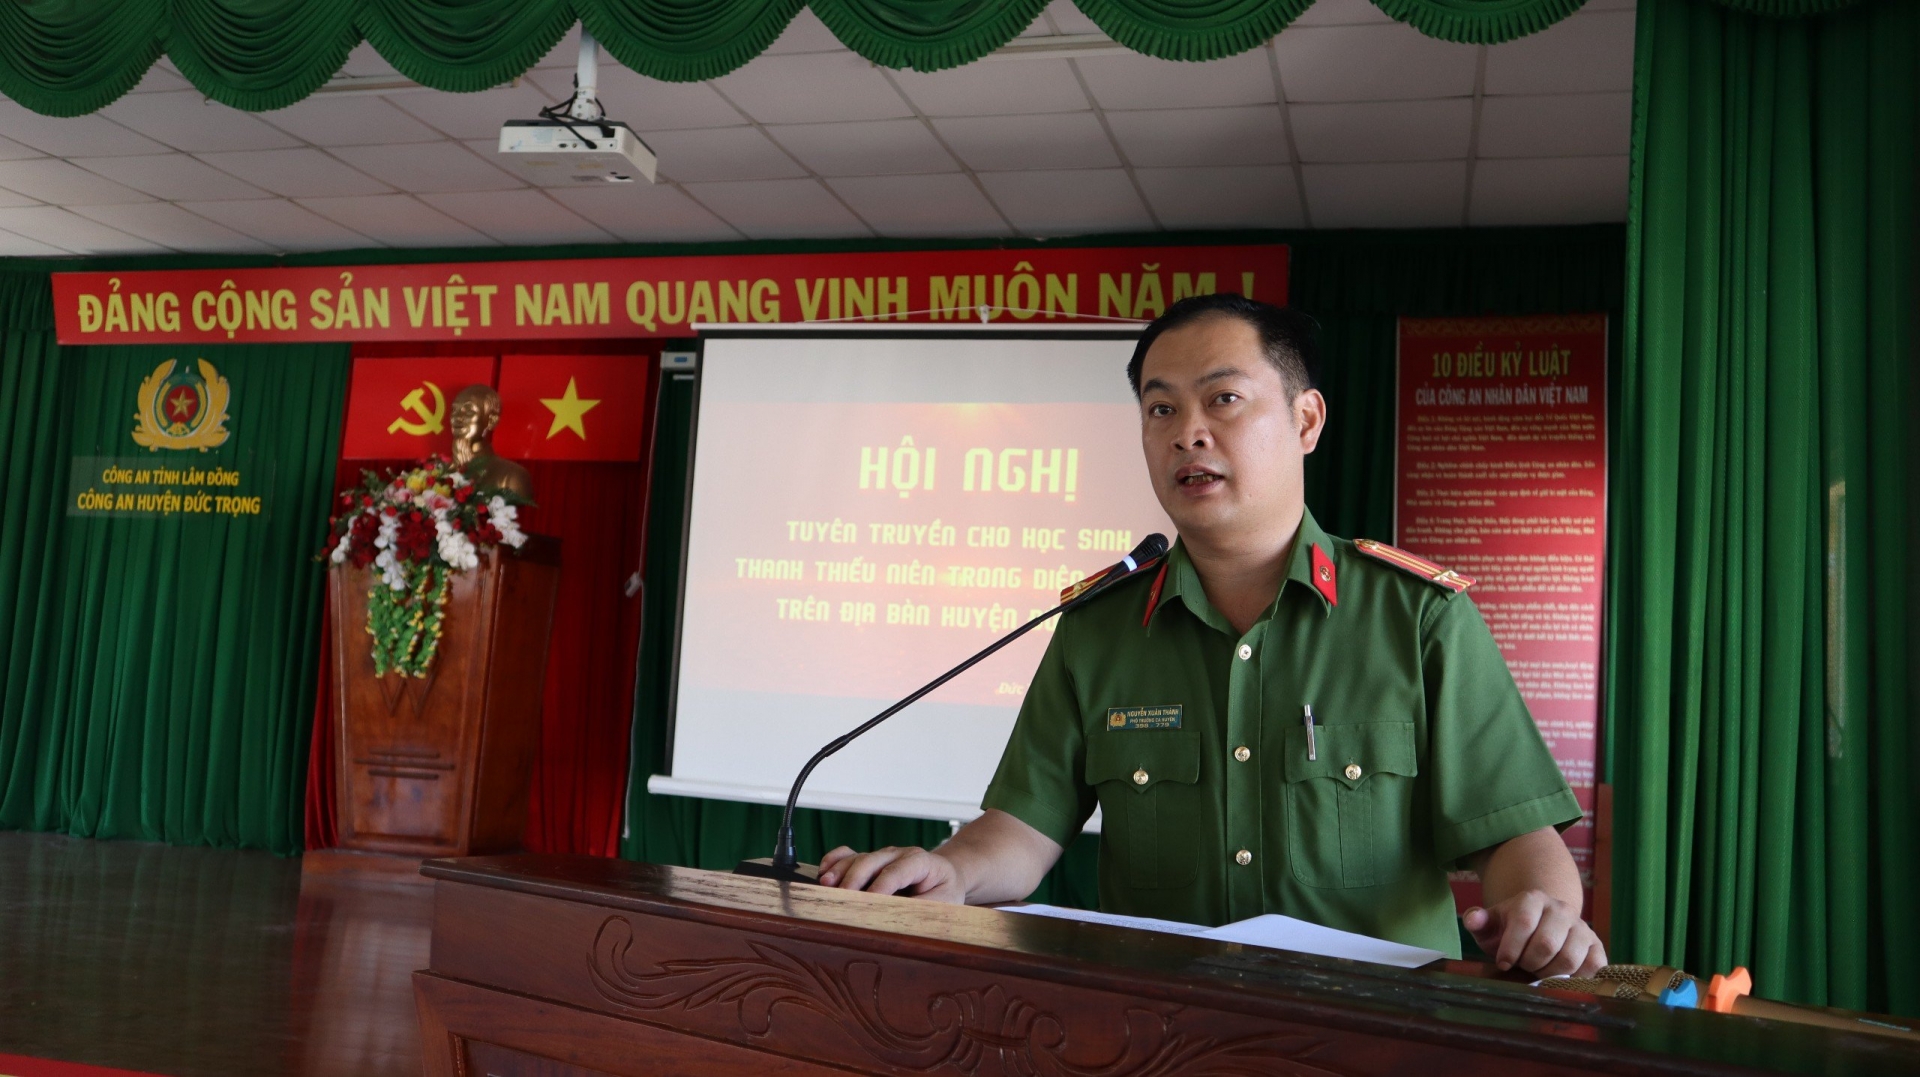 Trung tá Nguyễn Xuân Thành - Phó Trưởng Công an huyện Đức Trọng trong buổi tuyên truyền cho học sinh, thanh thiếu niên